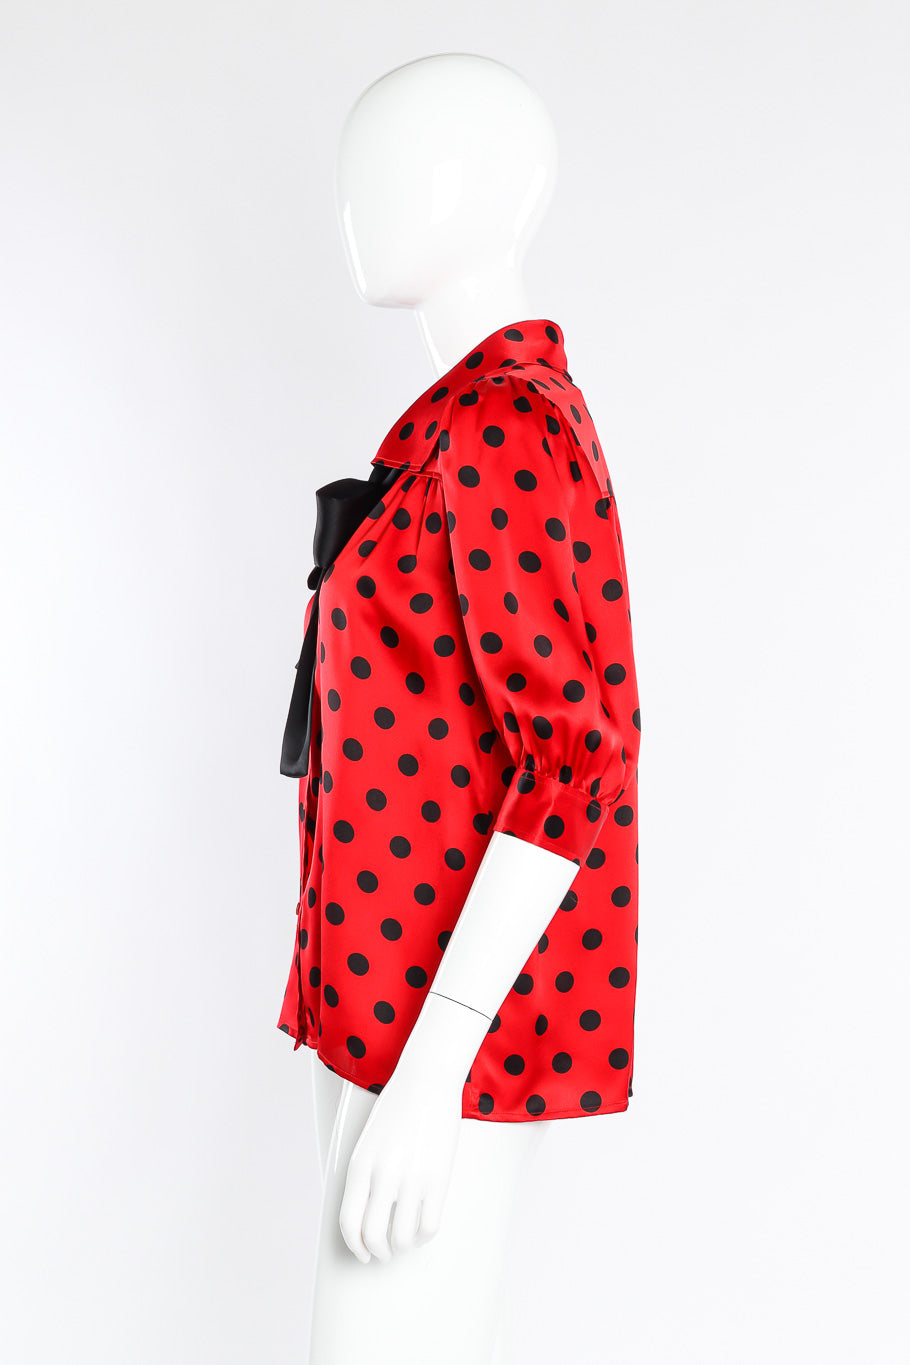 Yves Saint Laurent polka dot silk blouse on mannequin @recessla